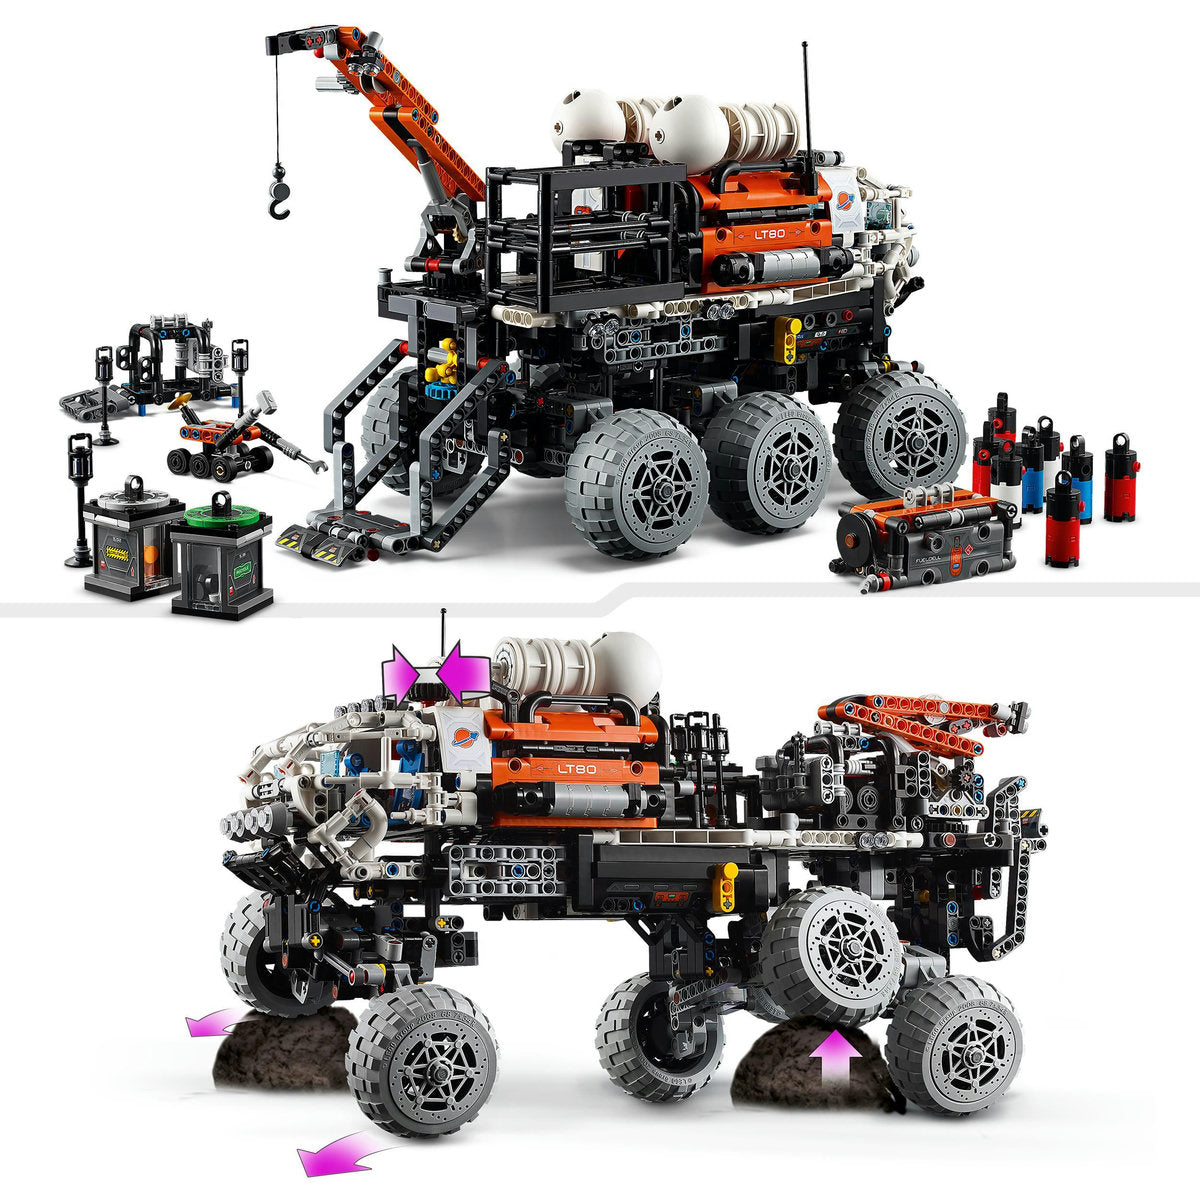 ROVER DE EXPLORARE PE MARTE CU ECHIPAJ - LEGO TECHNIC - LEGO (42180)